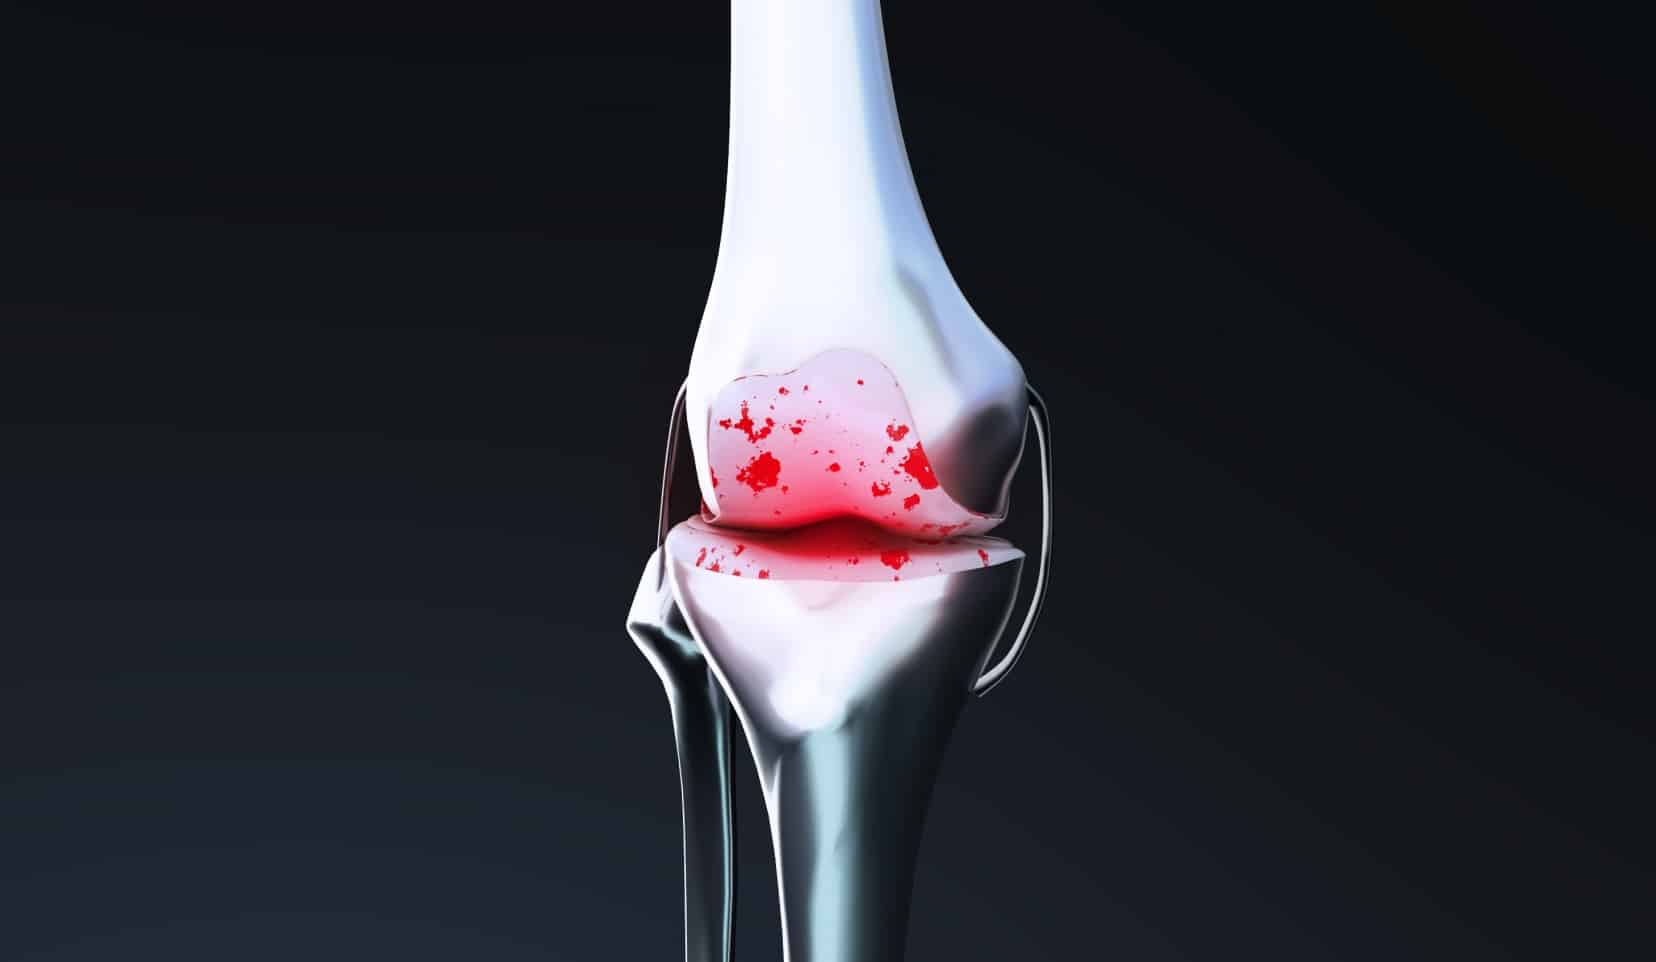 Ostéotomie tibiale de valgisation | chirurgien orthopédiste, orthopédiste | Bois-Guillaume | Dr Polle